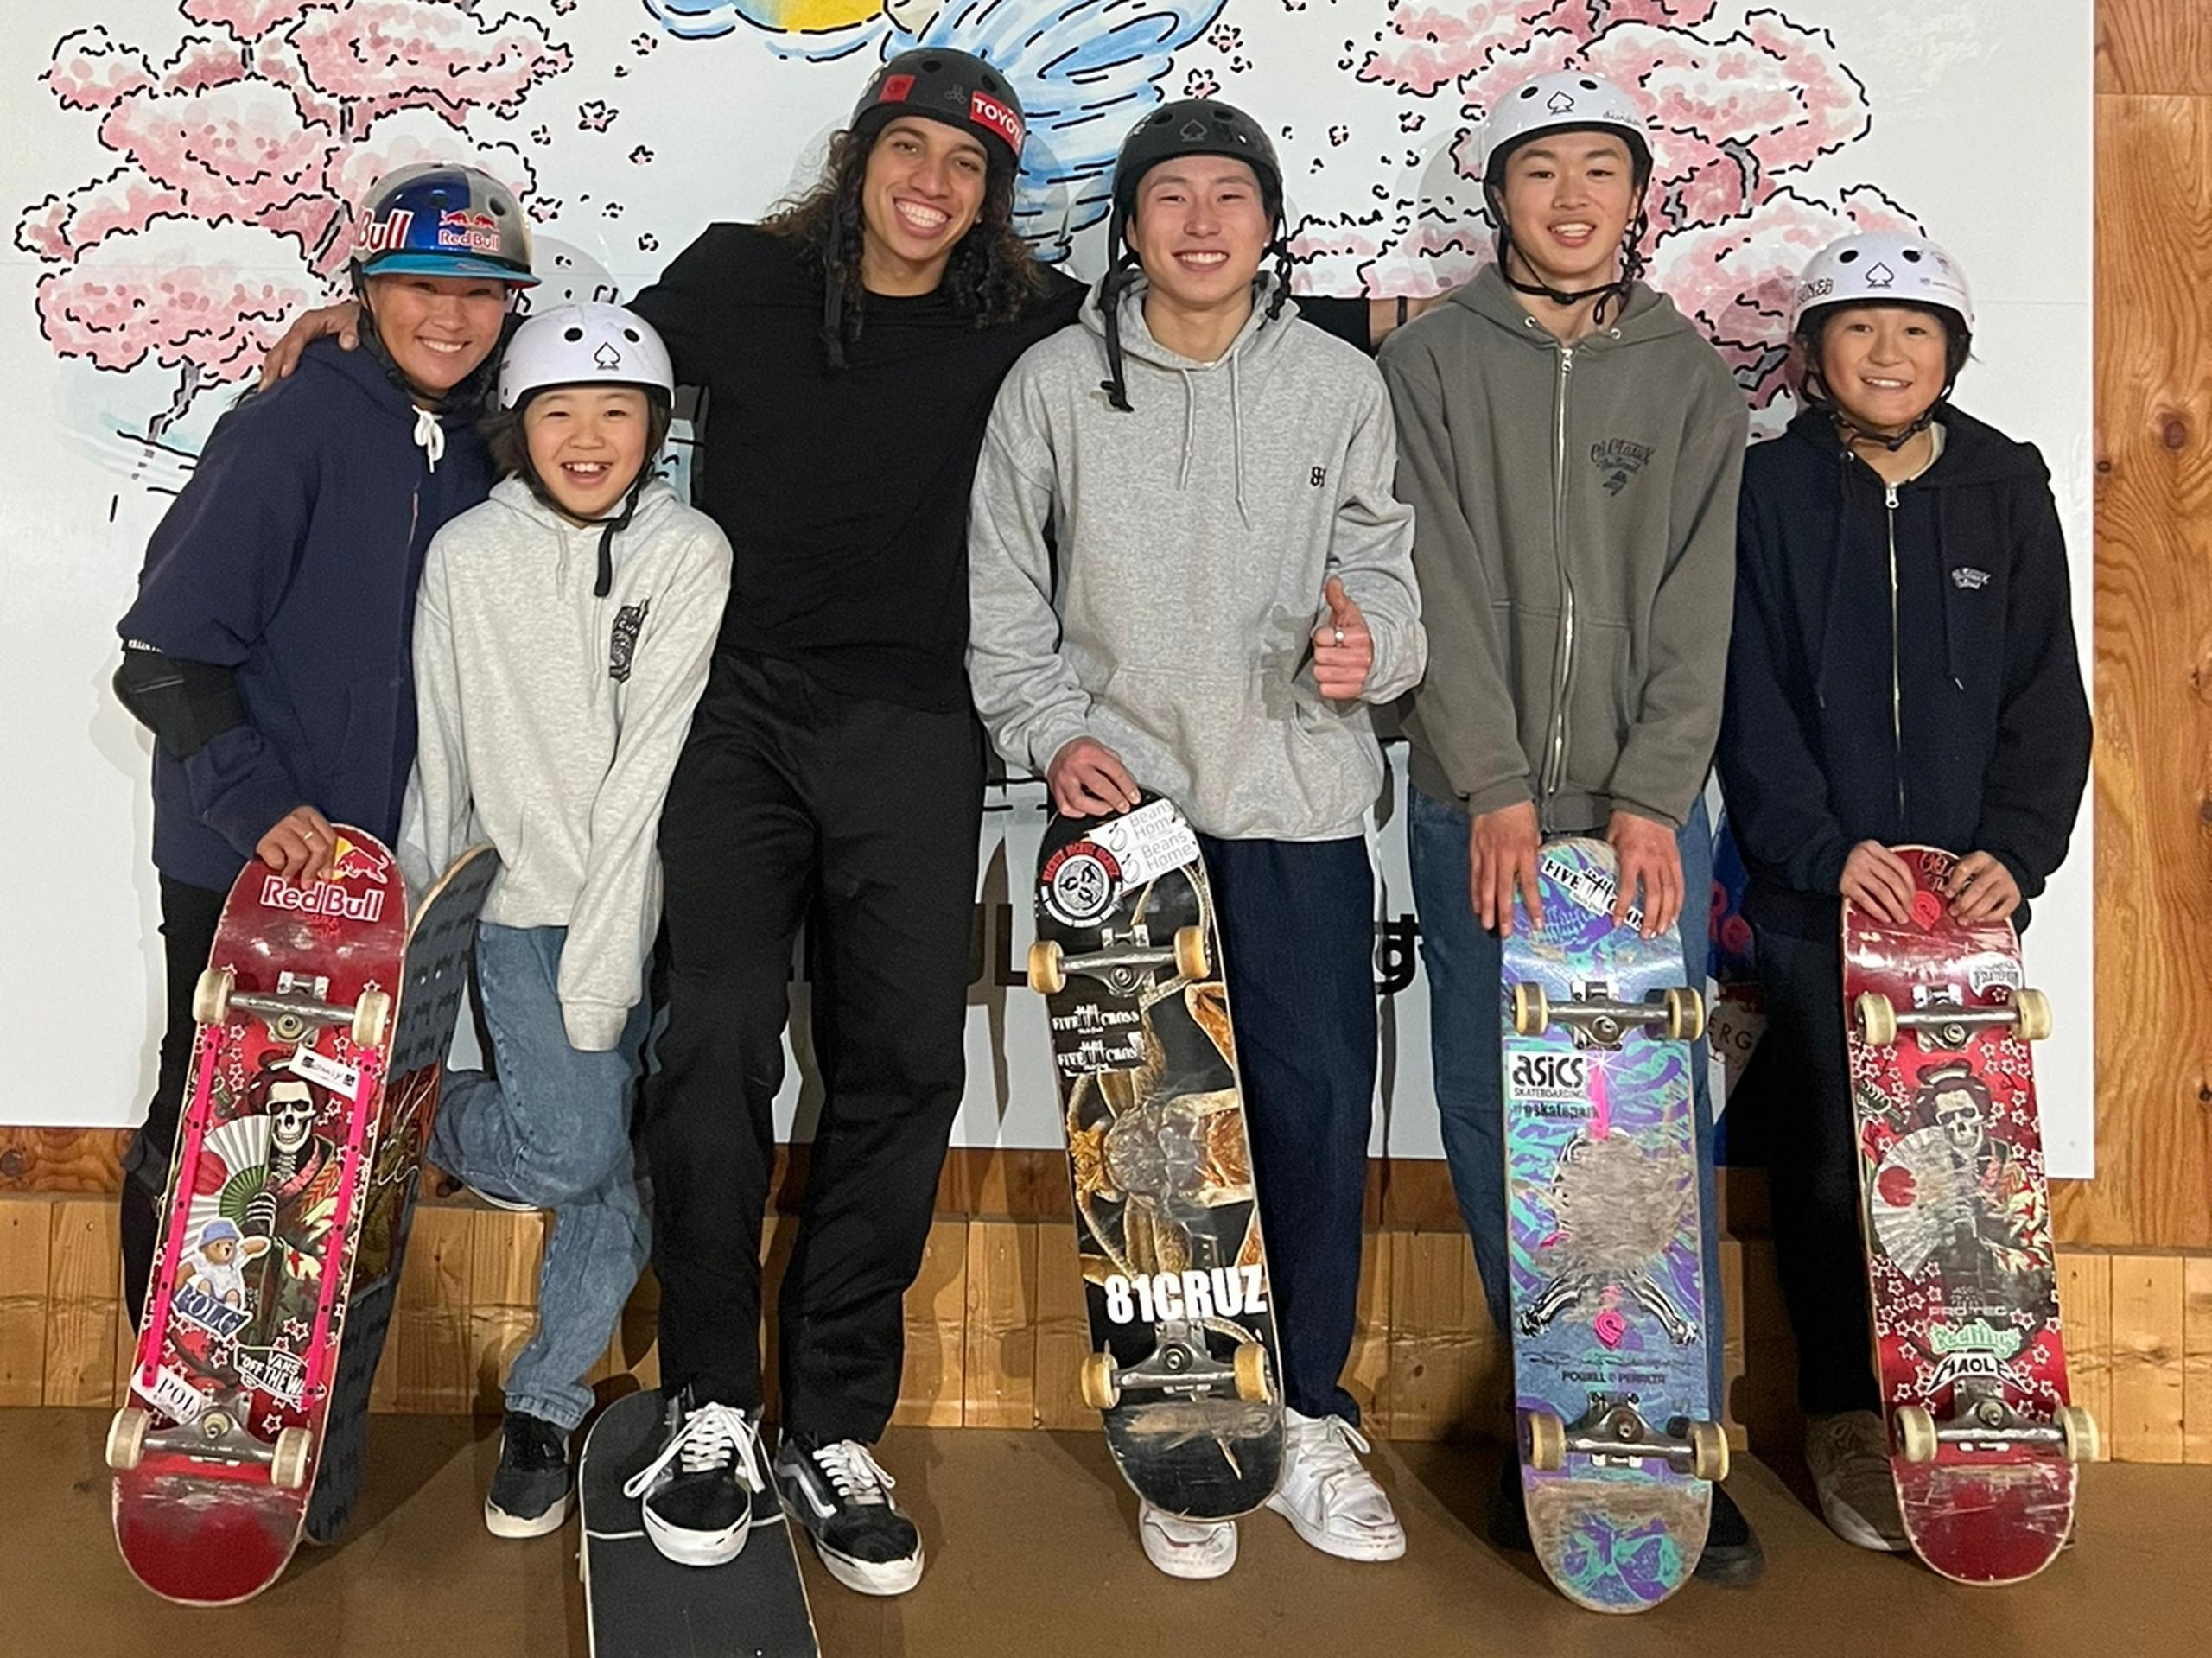 Steven Piñeiro posa con sus amigos japoneses skaters durante el campamento de entrenamiento que realiza en la ciudad de Nagoya previo al Campeonato Mundial de Street desde febrero en los Emiratos Árabes.